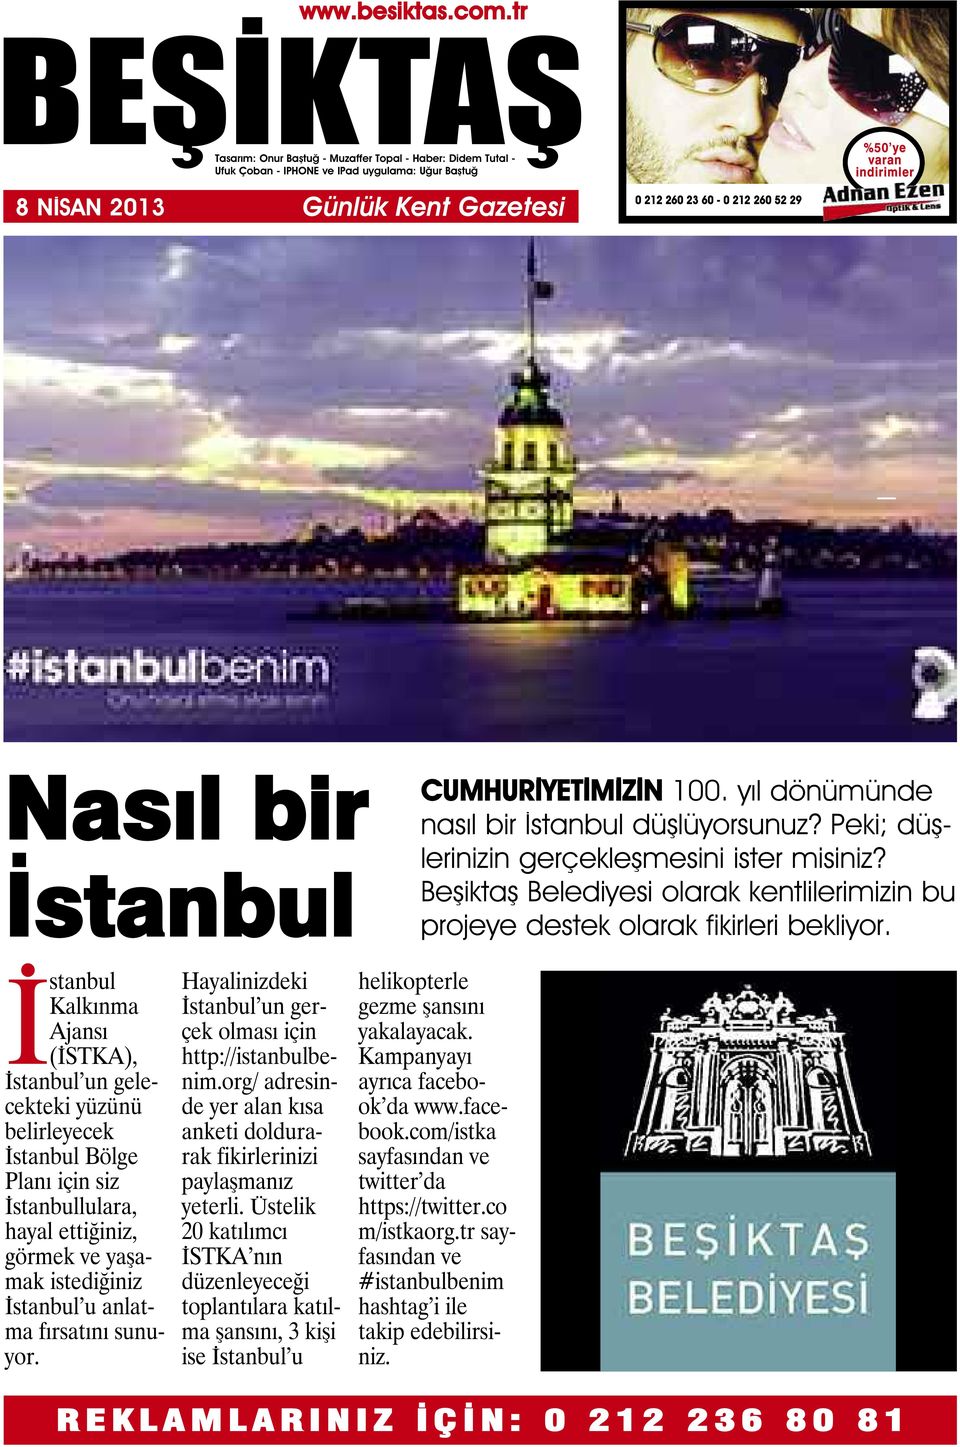 İstanbul Kalkınma Ajansı (İSTKA), İstanbul un gelecekteki yüzünü belirleyecek İstanbul Bölge Planı için siz İstanbullulara, hayal ettiğiniz, görmek ve yaşamak istediğiniz İstanbul u anlatma fırsatını